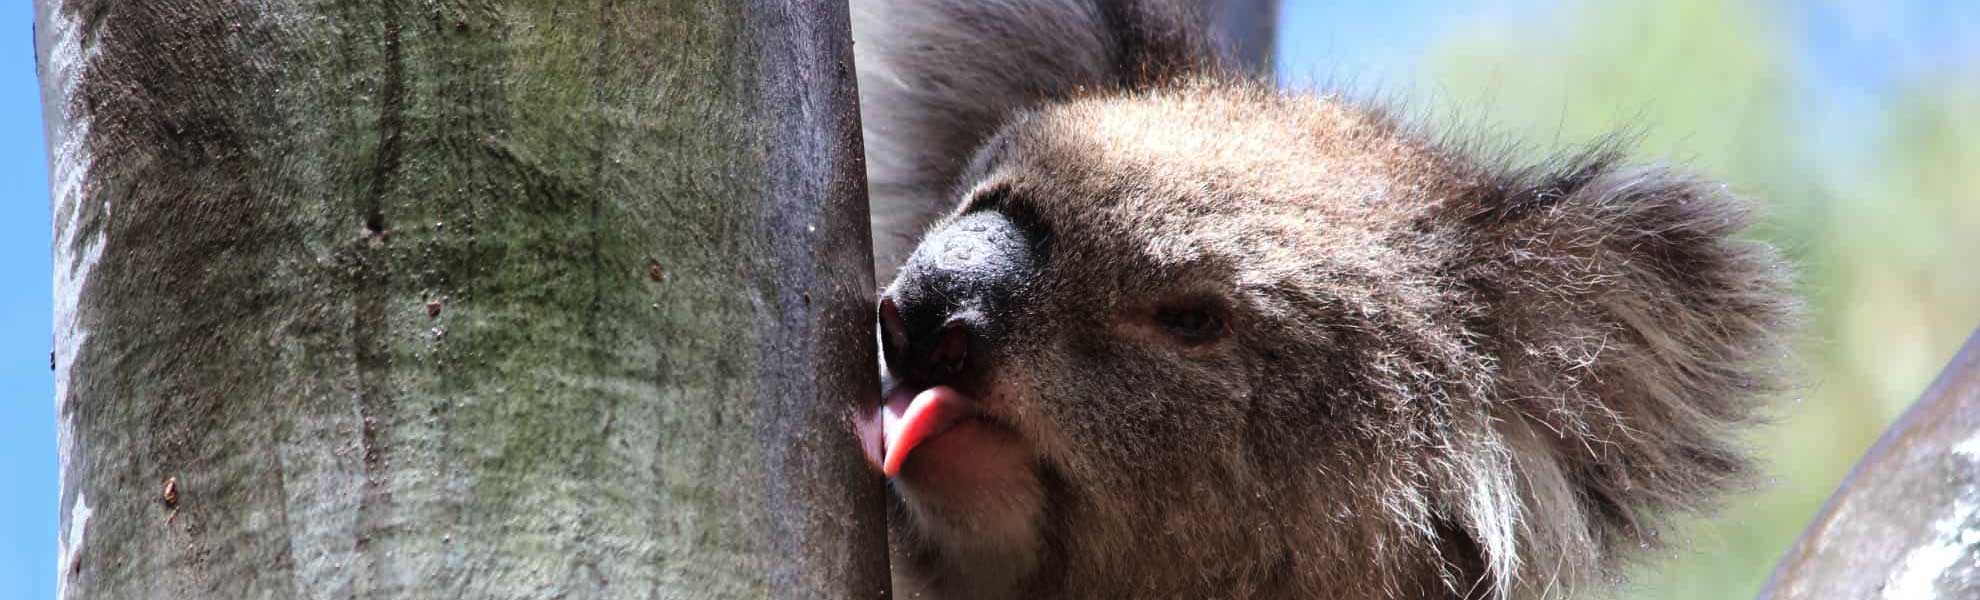 wild koala day charities